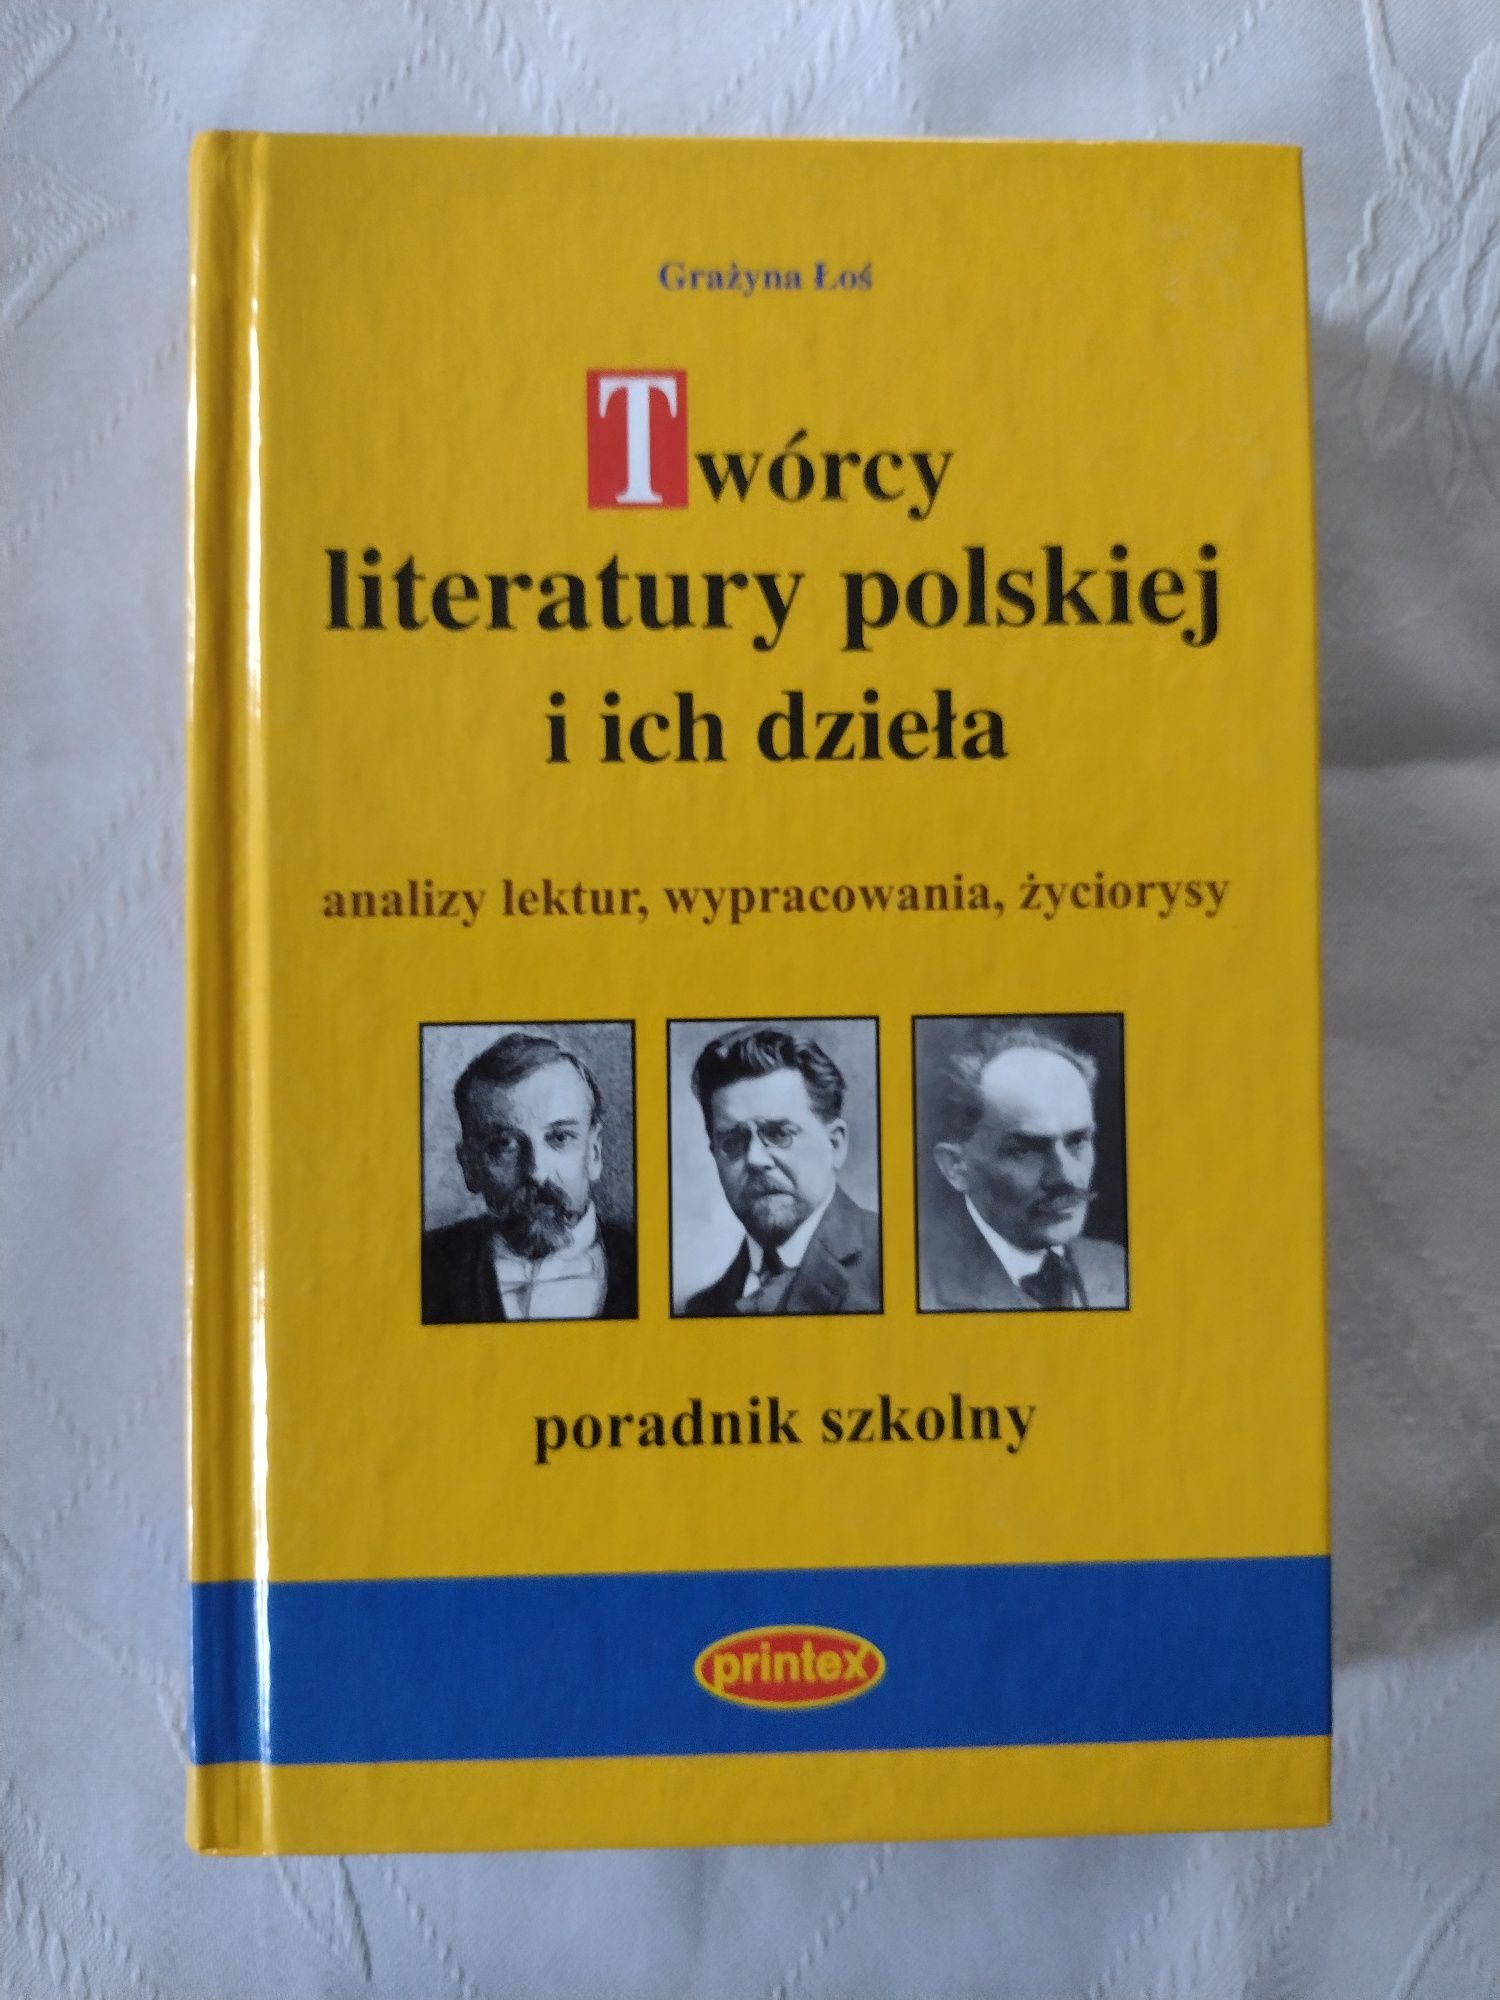 Twòrcy literatury polskiej i ich dzieła